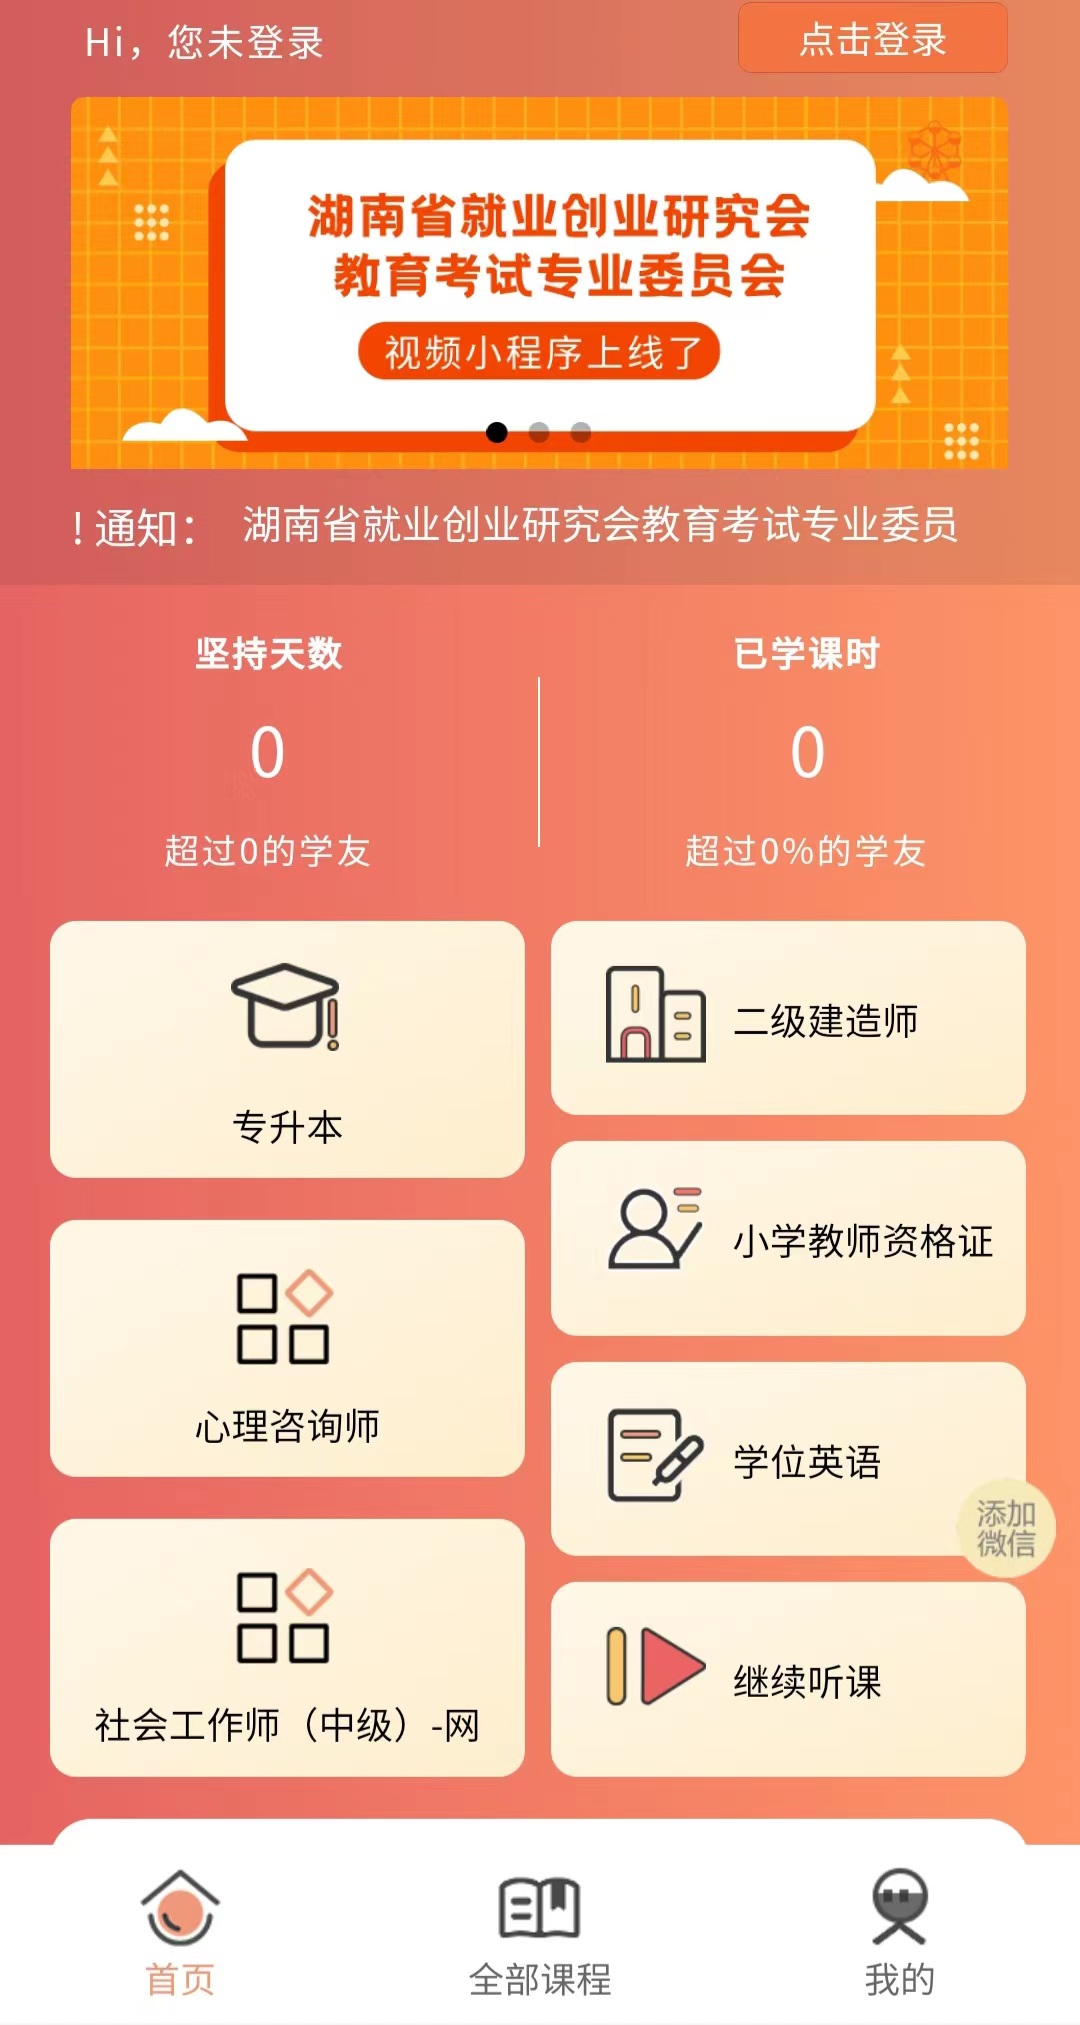 湖南省就业创业研究会教育考试专业委员会视频小程序上线了